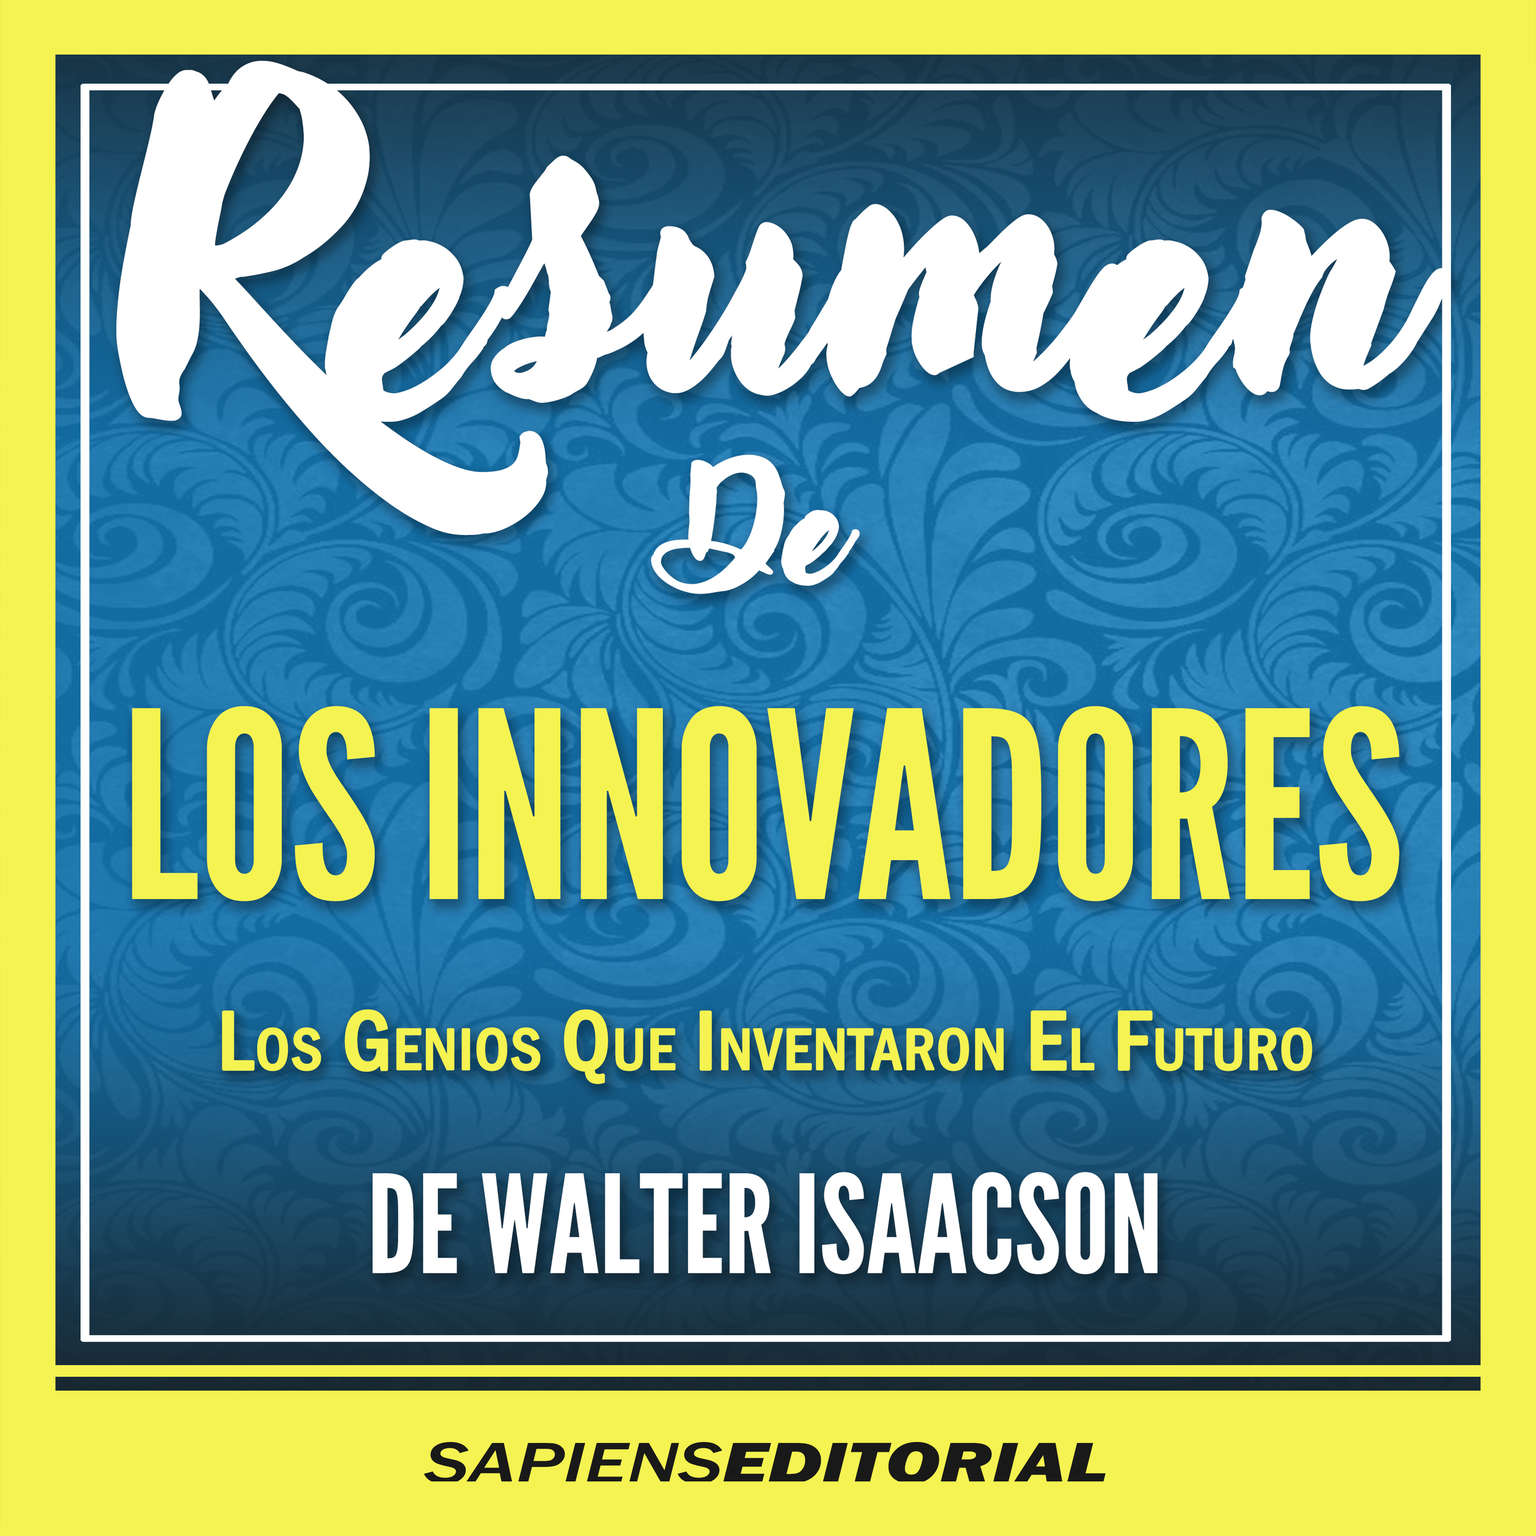 Resumen De Los Innovadores: Los Genios Que Inventaron El Futuro - De Walter Isaacson (Abridged) Audiobook, by Sapiens Editorial